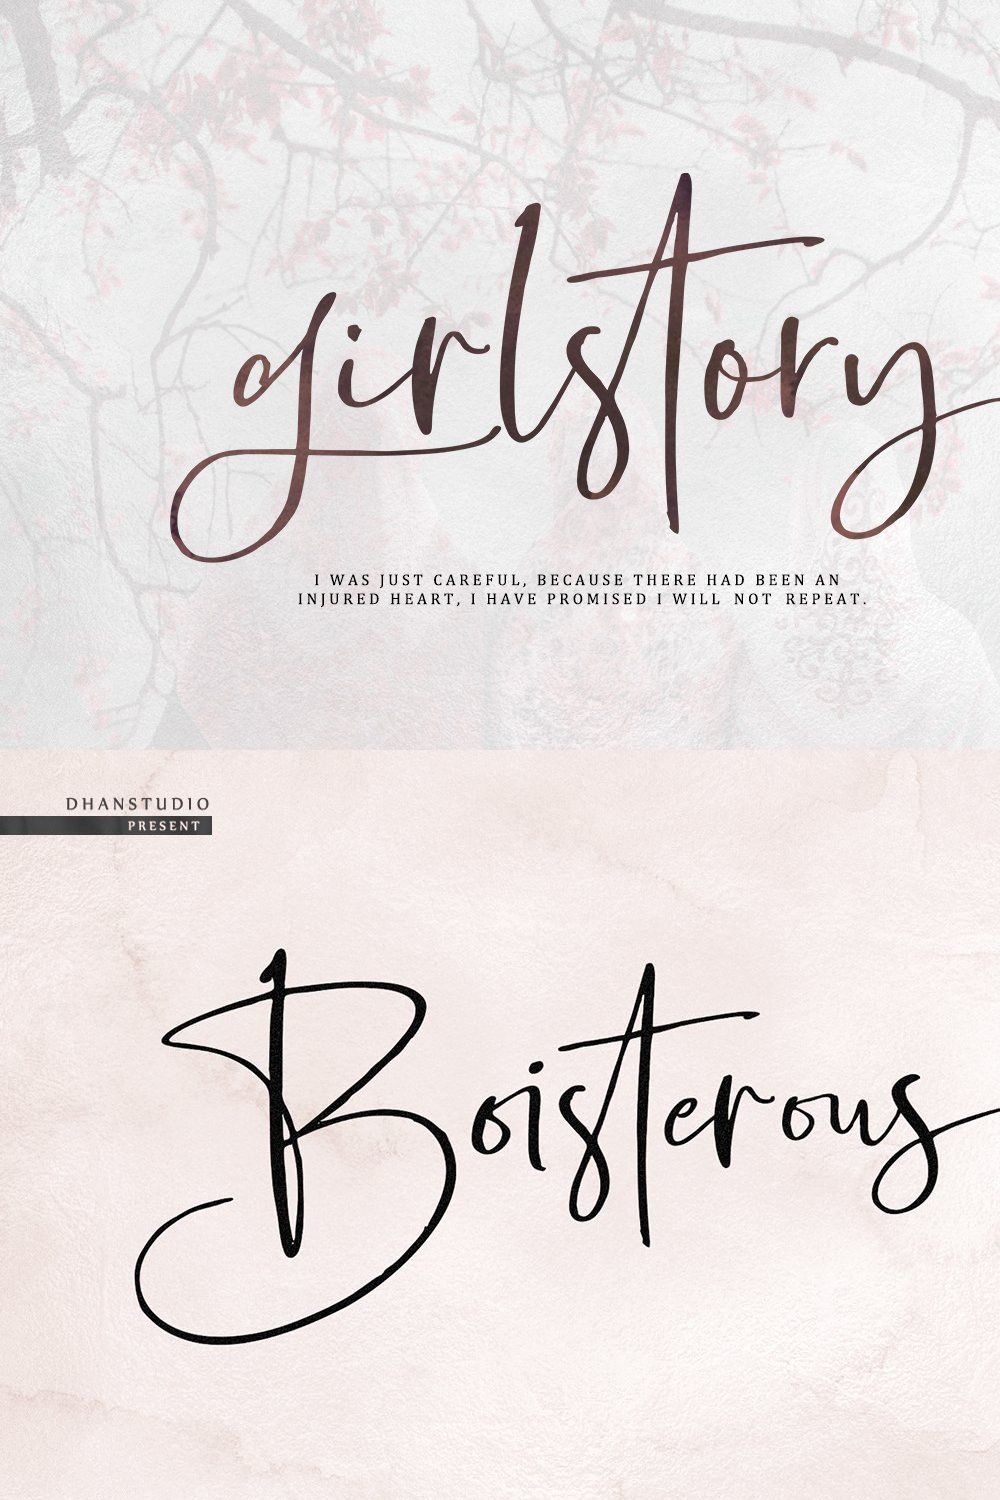 Boisterous Signature Font pinterest preview image.